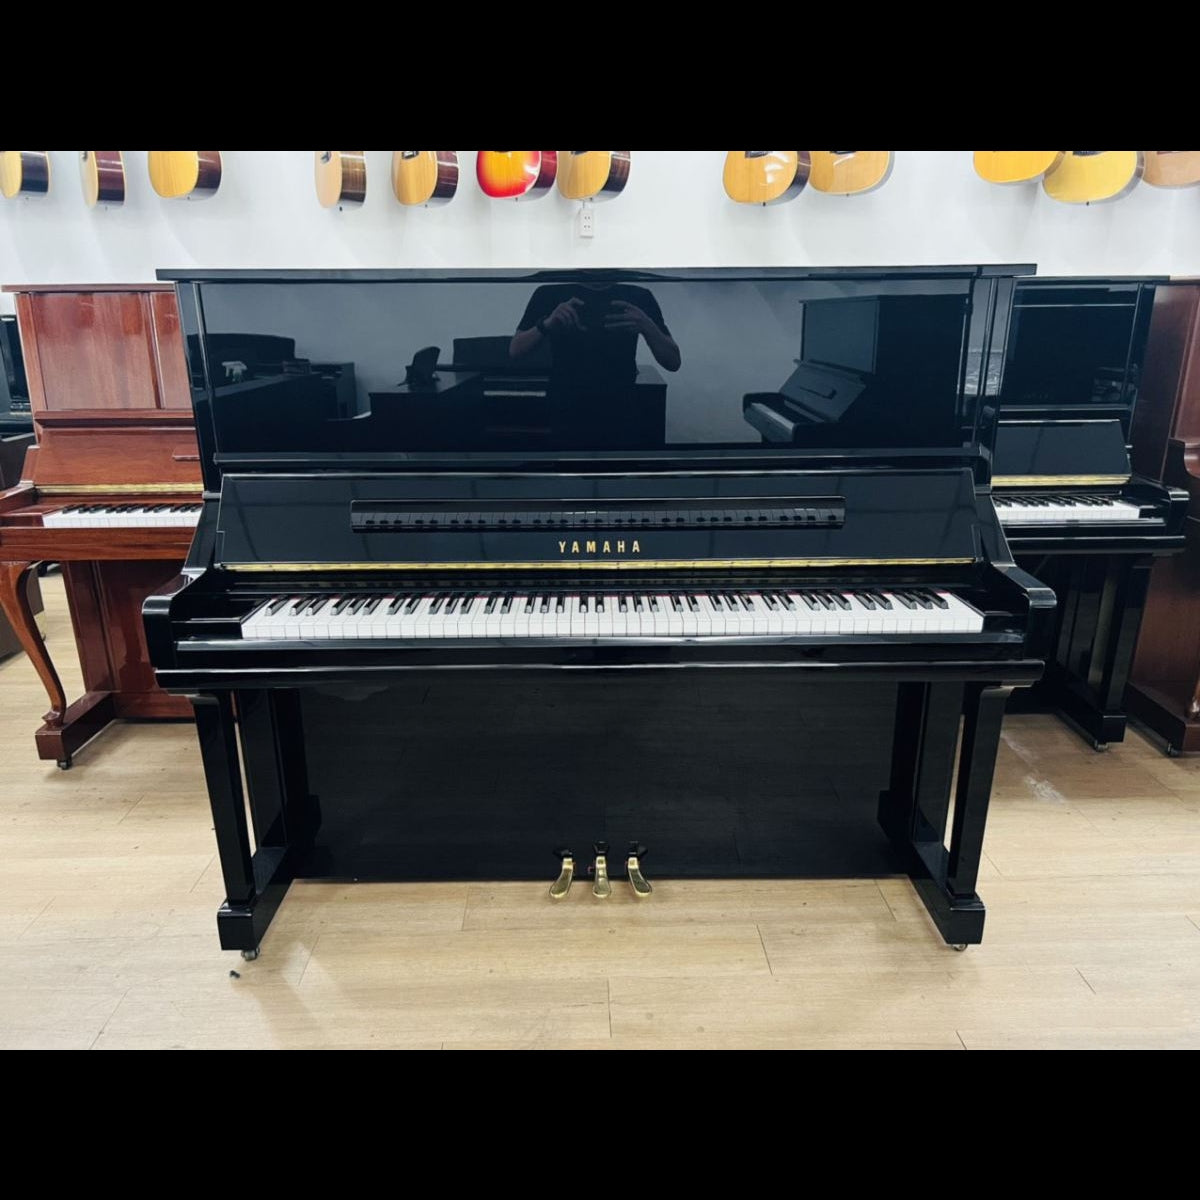 Đàn Piano Cơ Upright Yamaha YU33 PE - Qua Sử Dụng